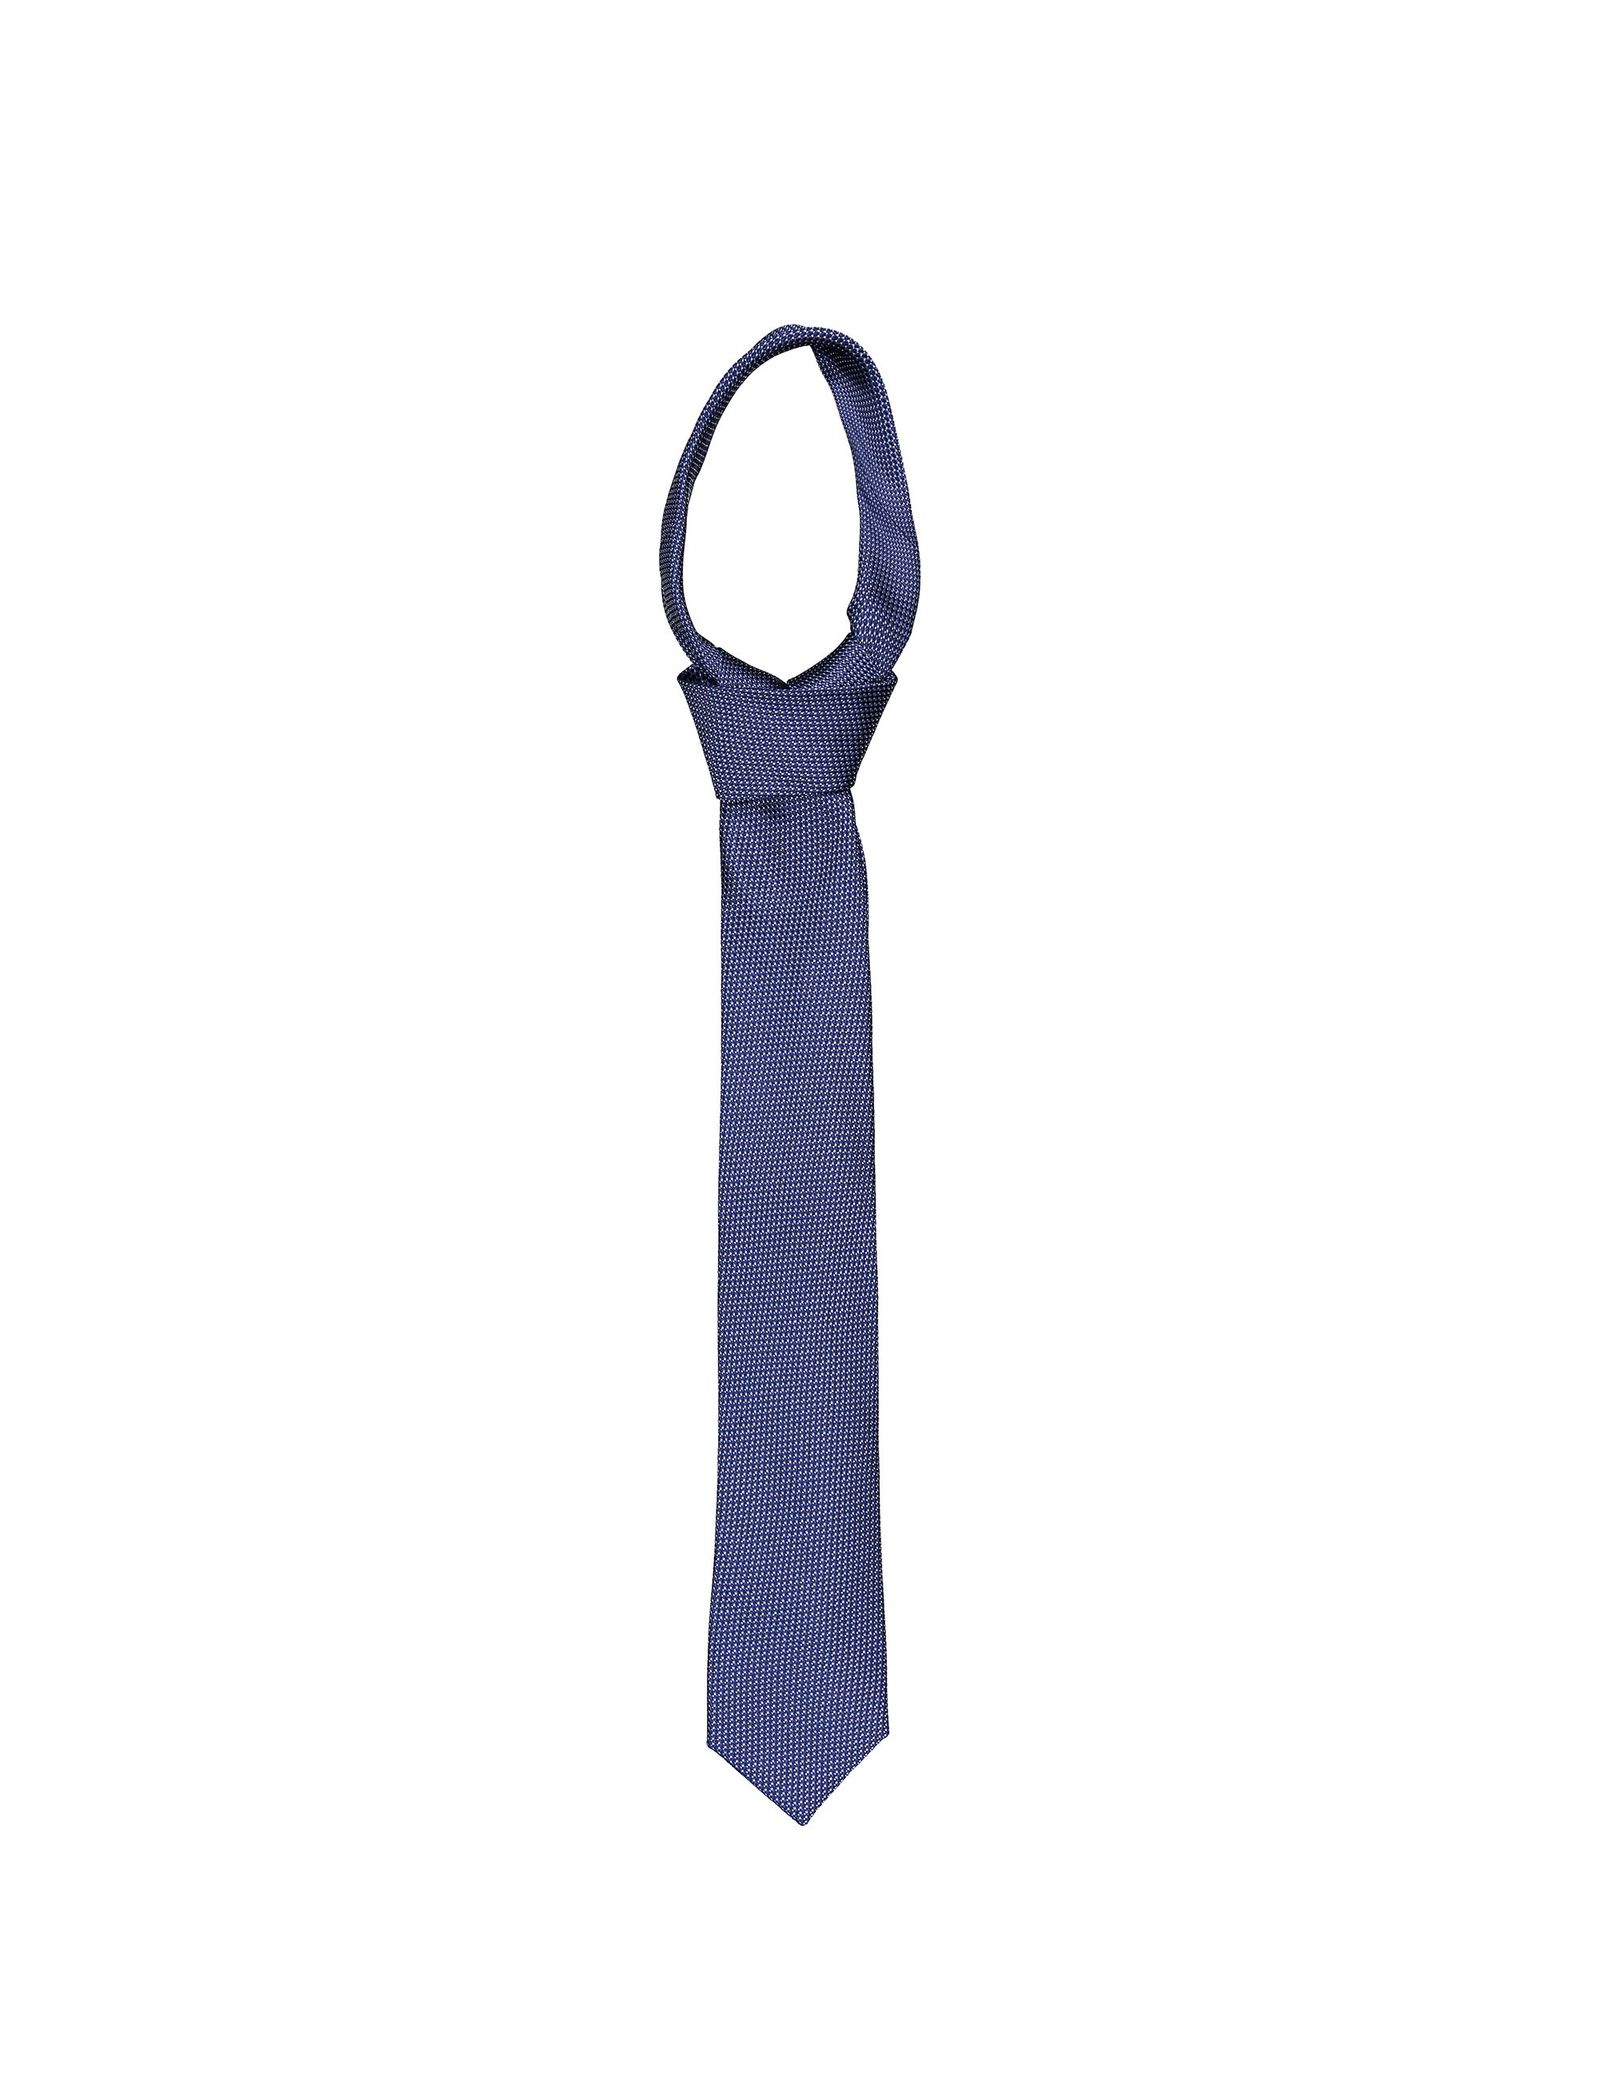 کراوات ابریشم طرح دار مردانه - یوپیم تک سایز - آبي - 2